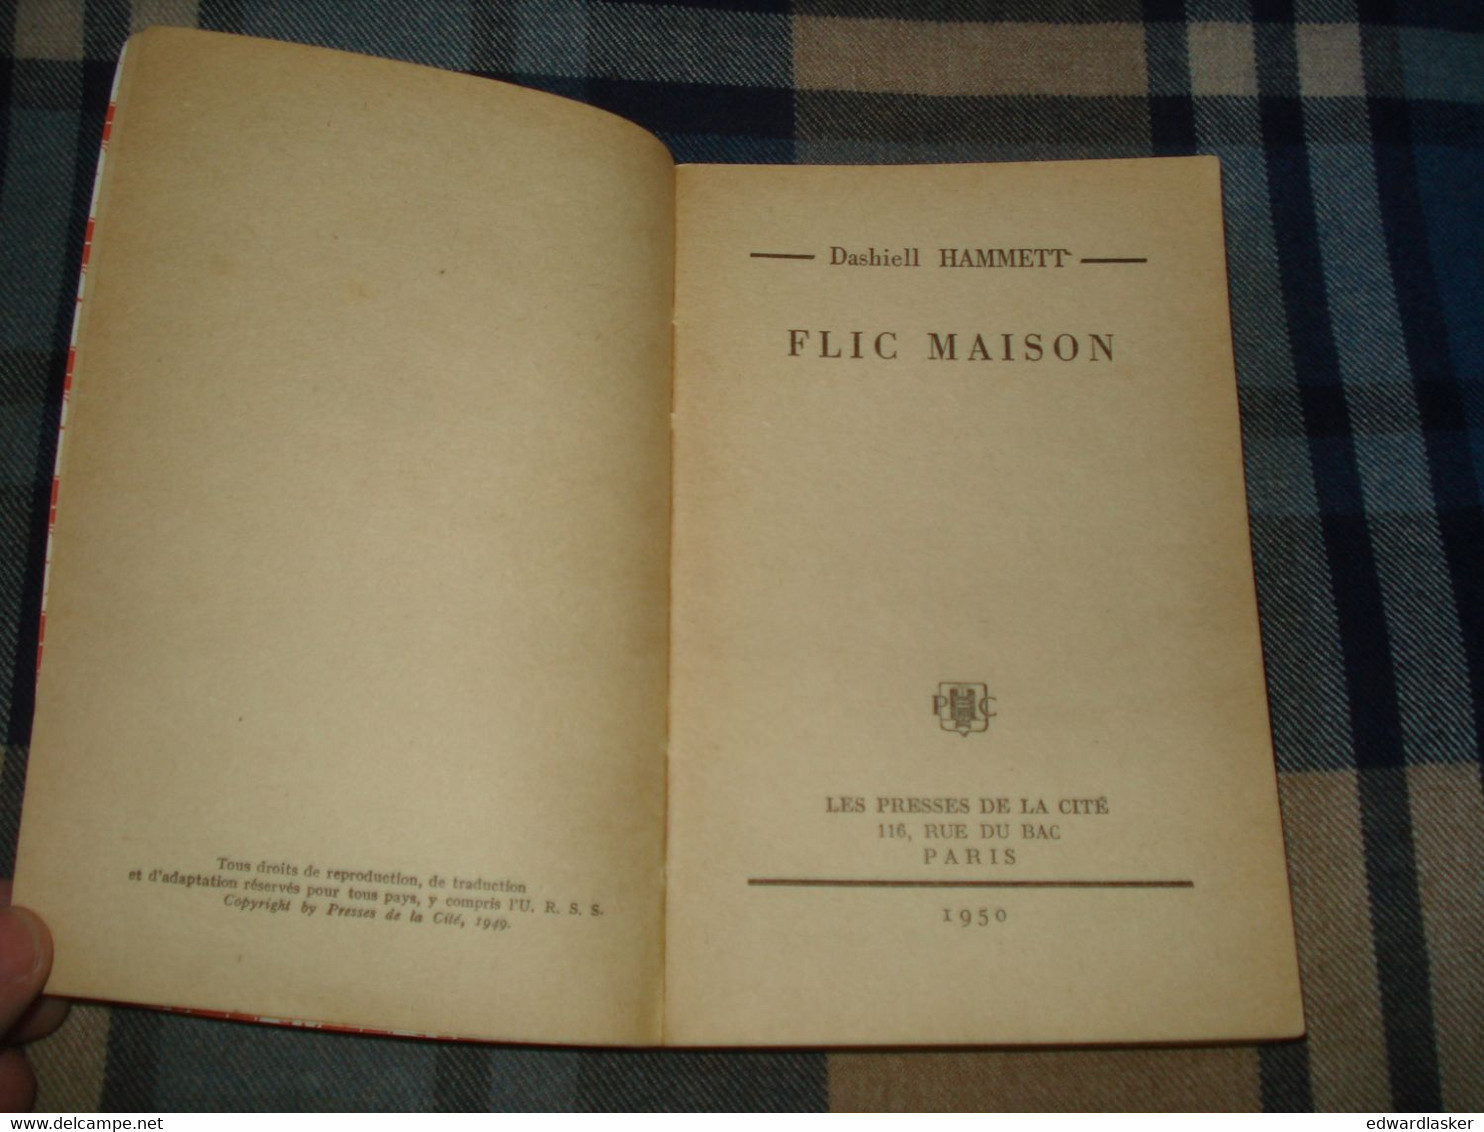 Un MYSTERE N°20 : FLIC MAISON /Dashiell HAMMETT - Mai 1950 - Presses De La Cité